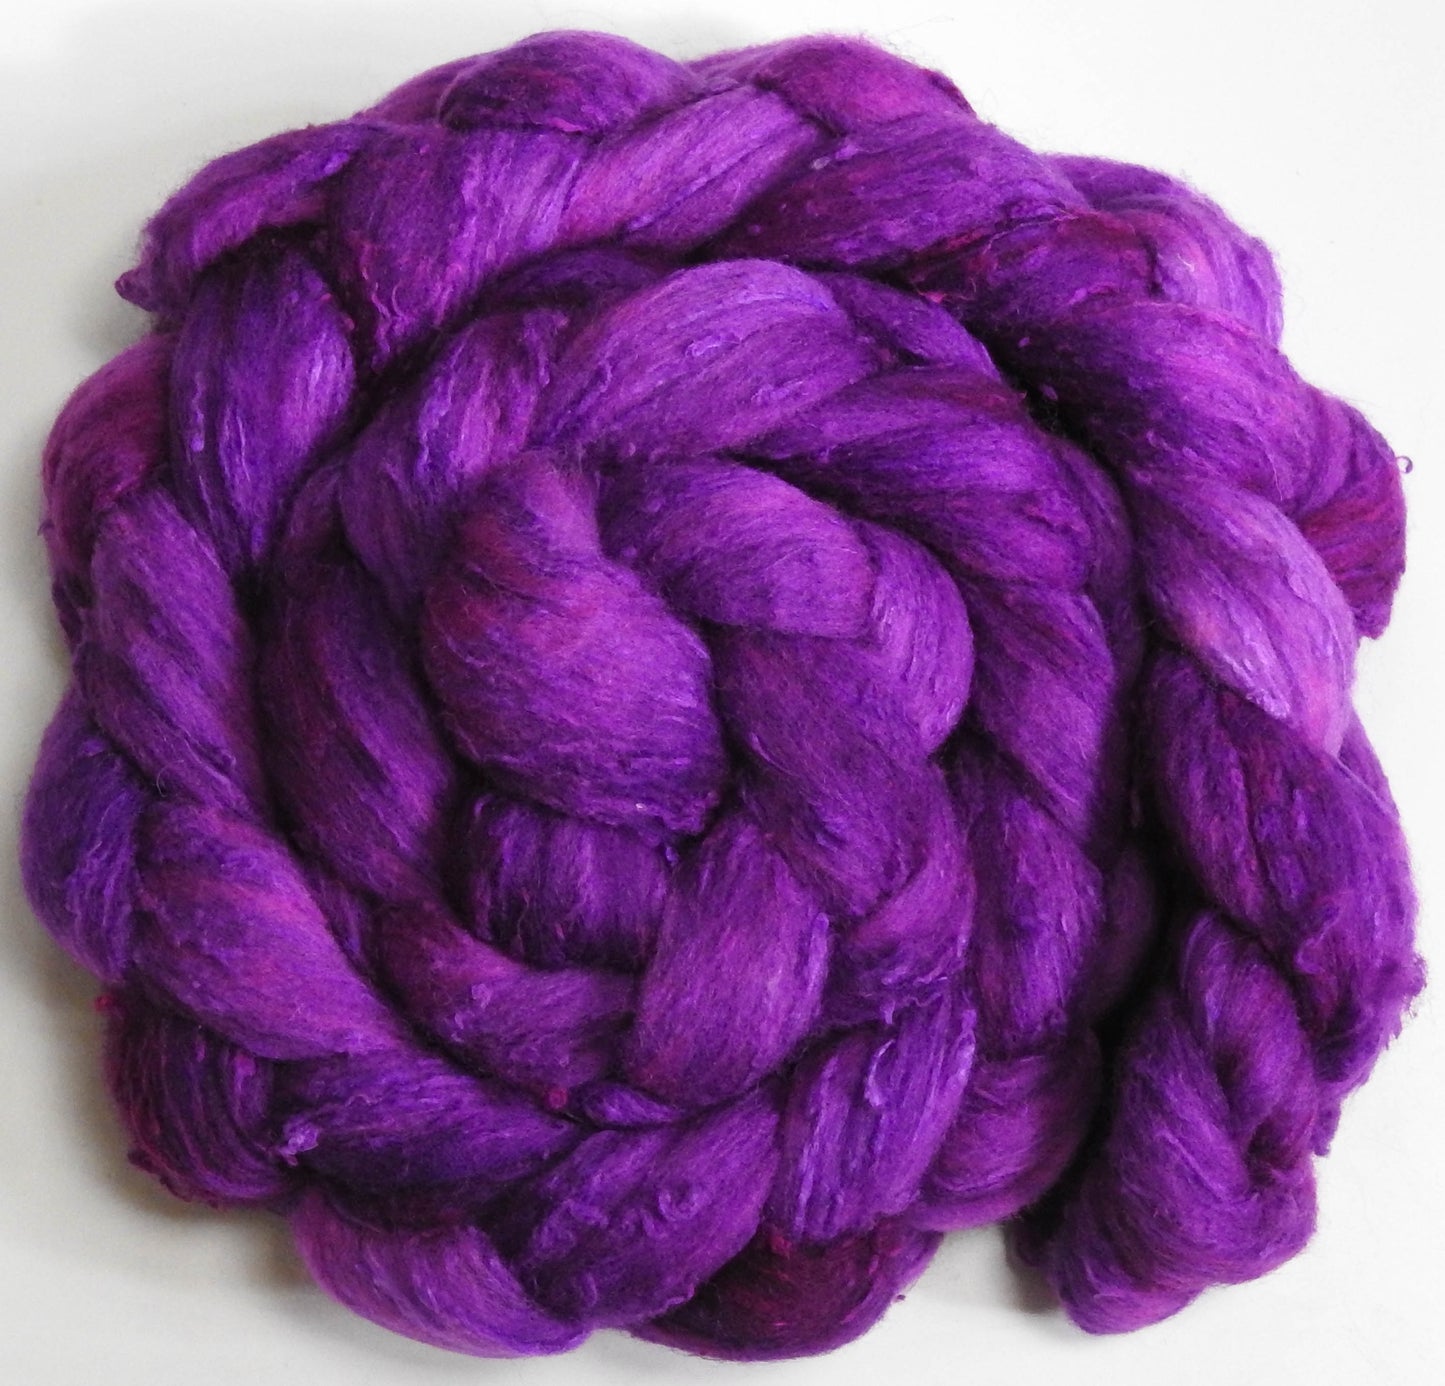 Tyrian Purple (5.8 oz)- 25 micron Merino/ Silk Slubs (70/30)